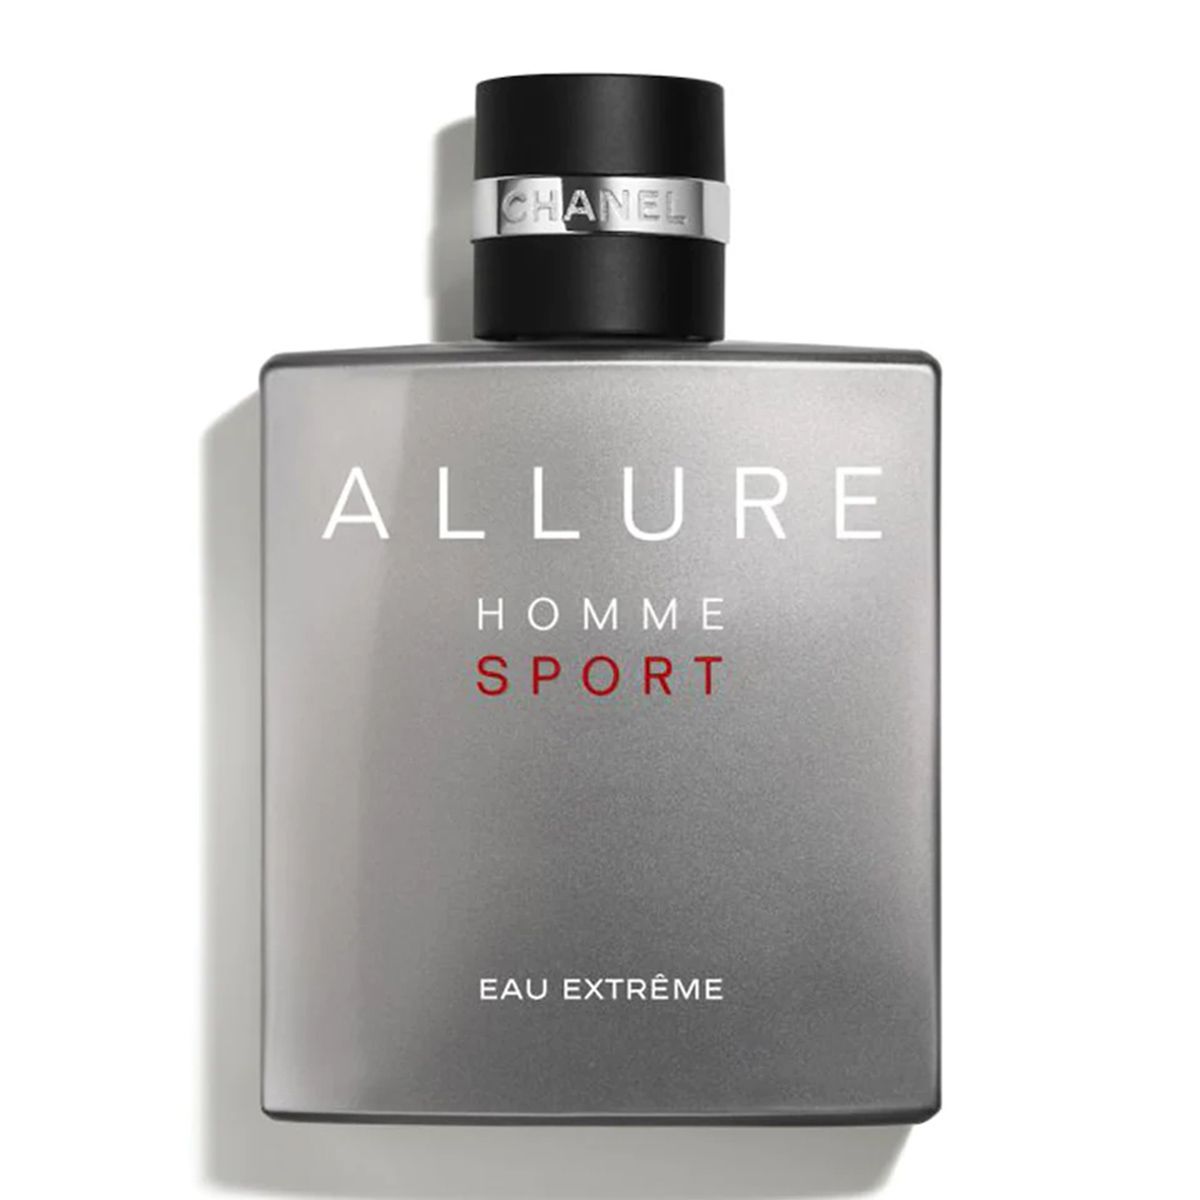  Chanel Allure Homme Sport Eau Extreme Eau de Parfum 